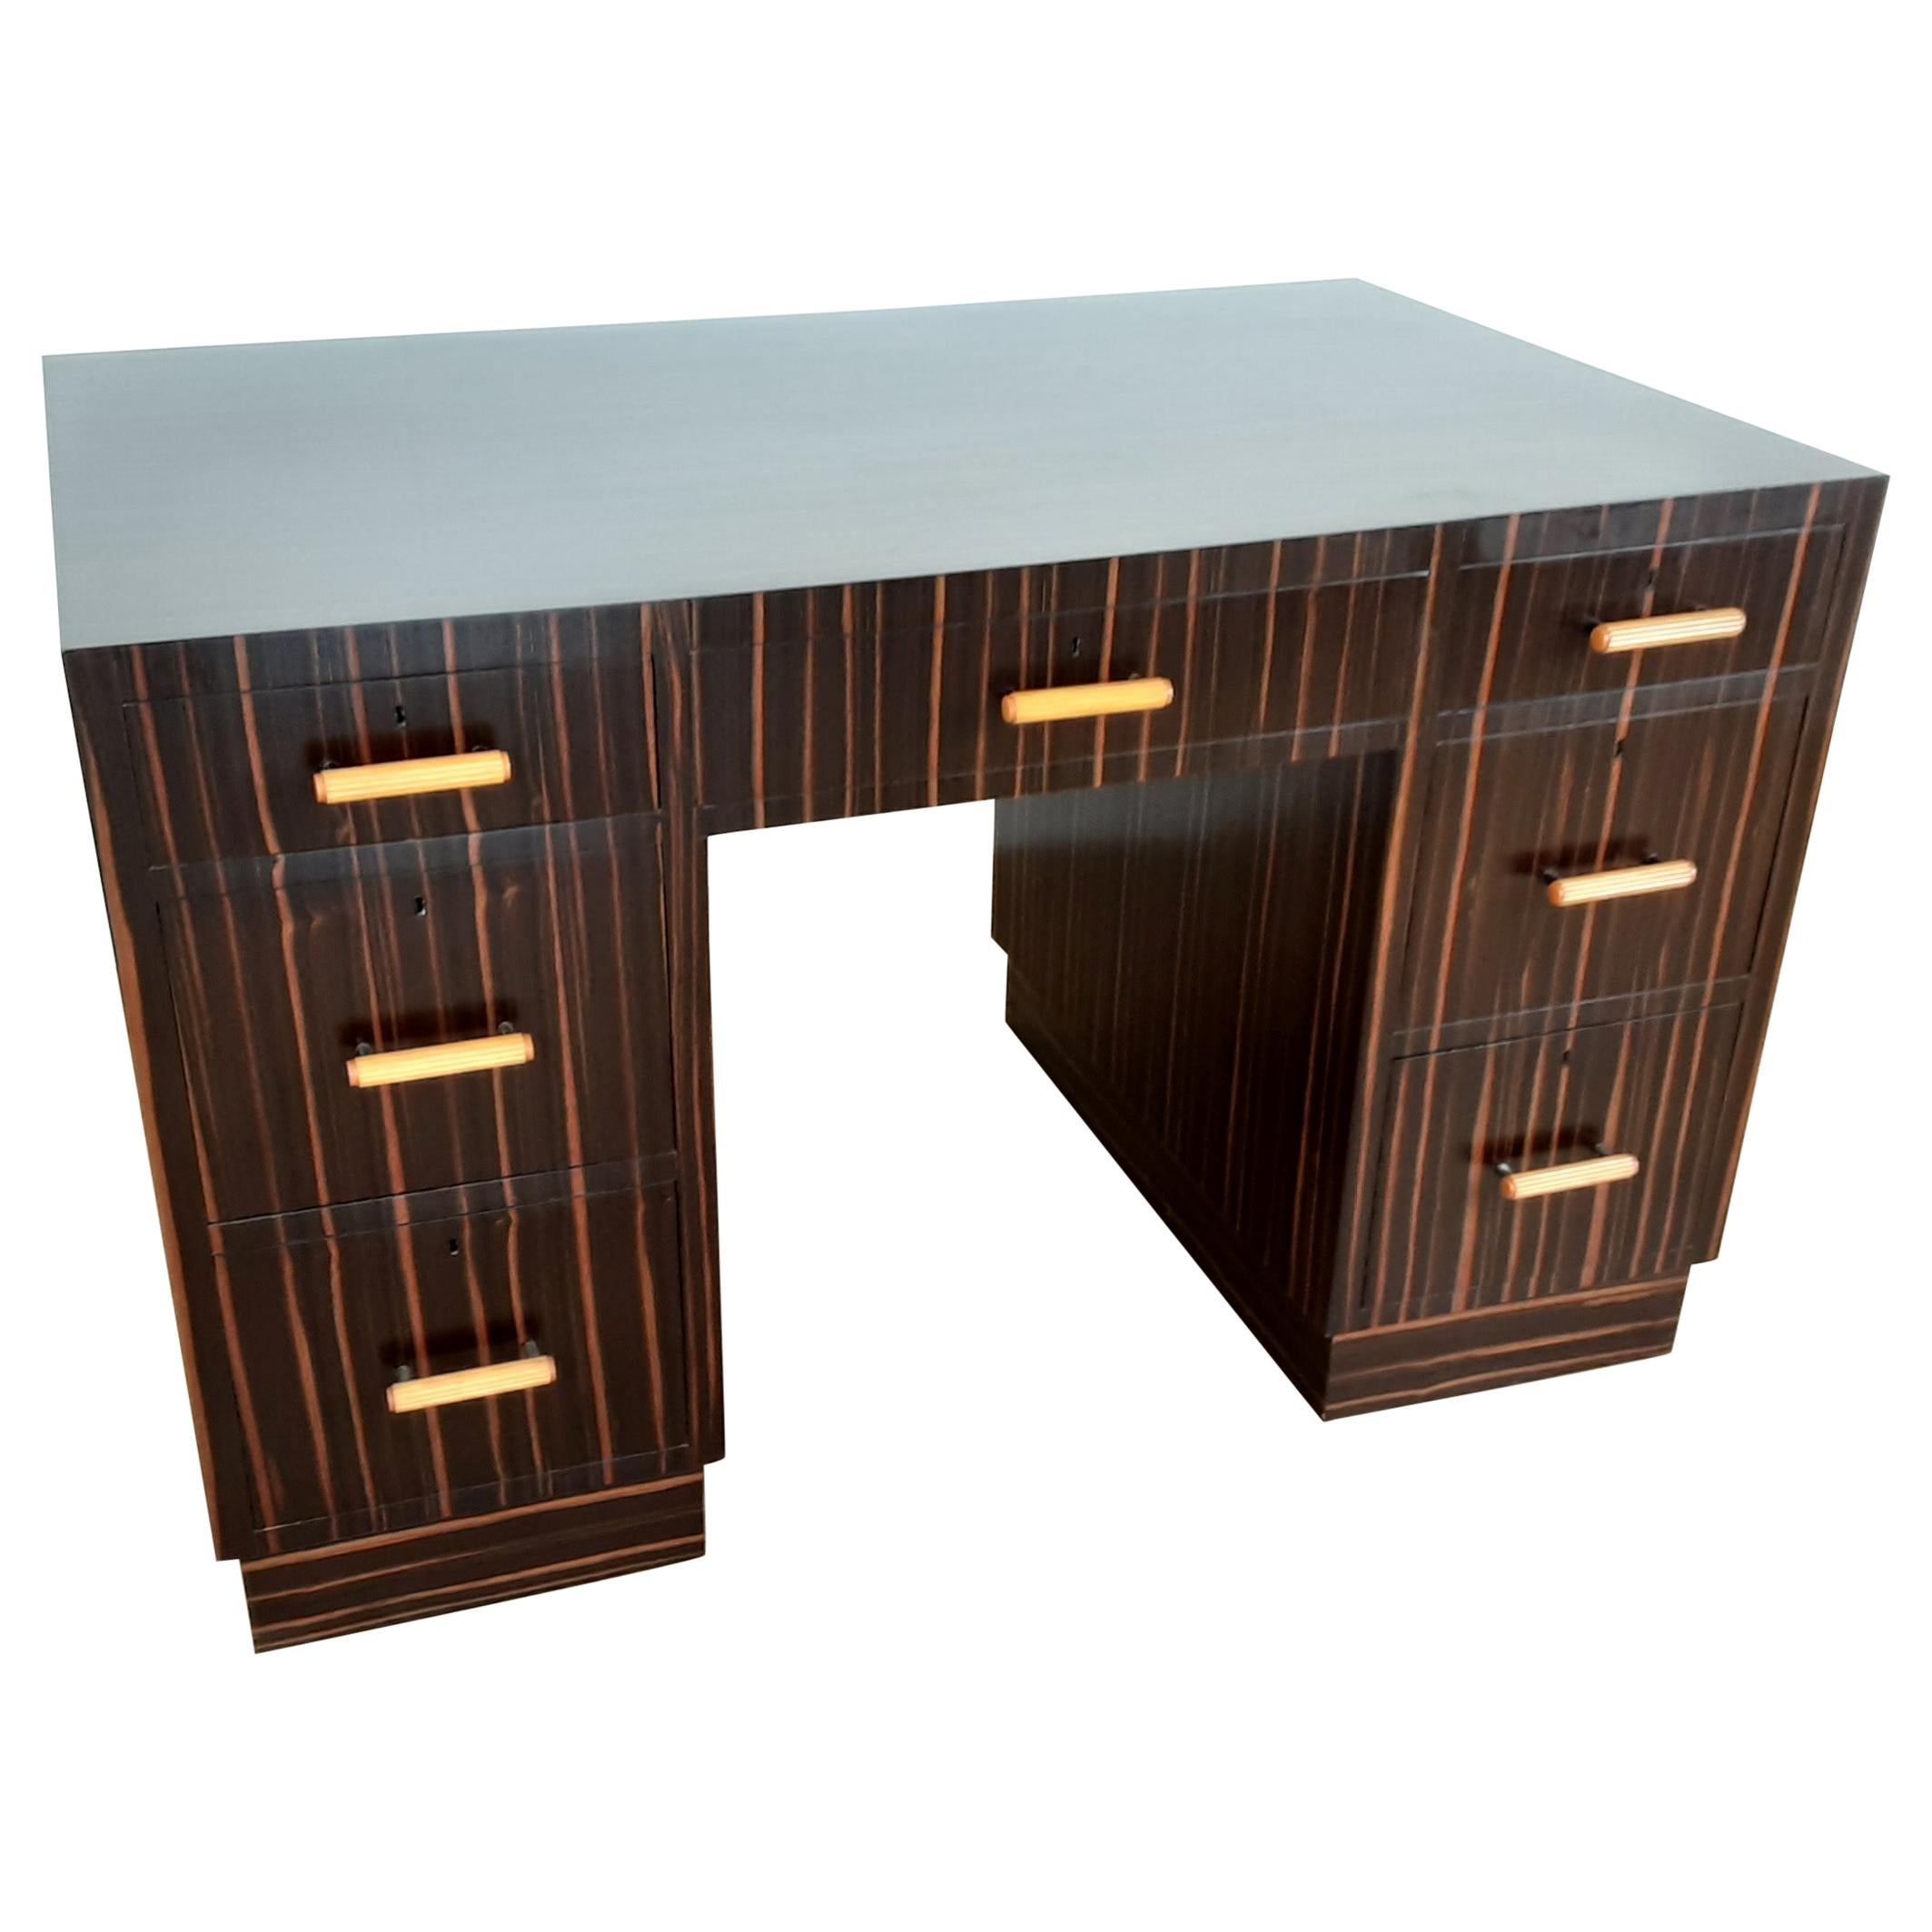 British Art Deco Macassar Desk with Bakelite Handles